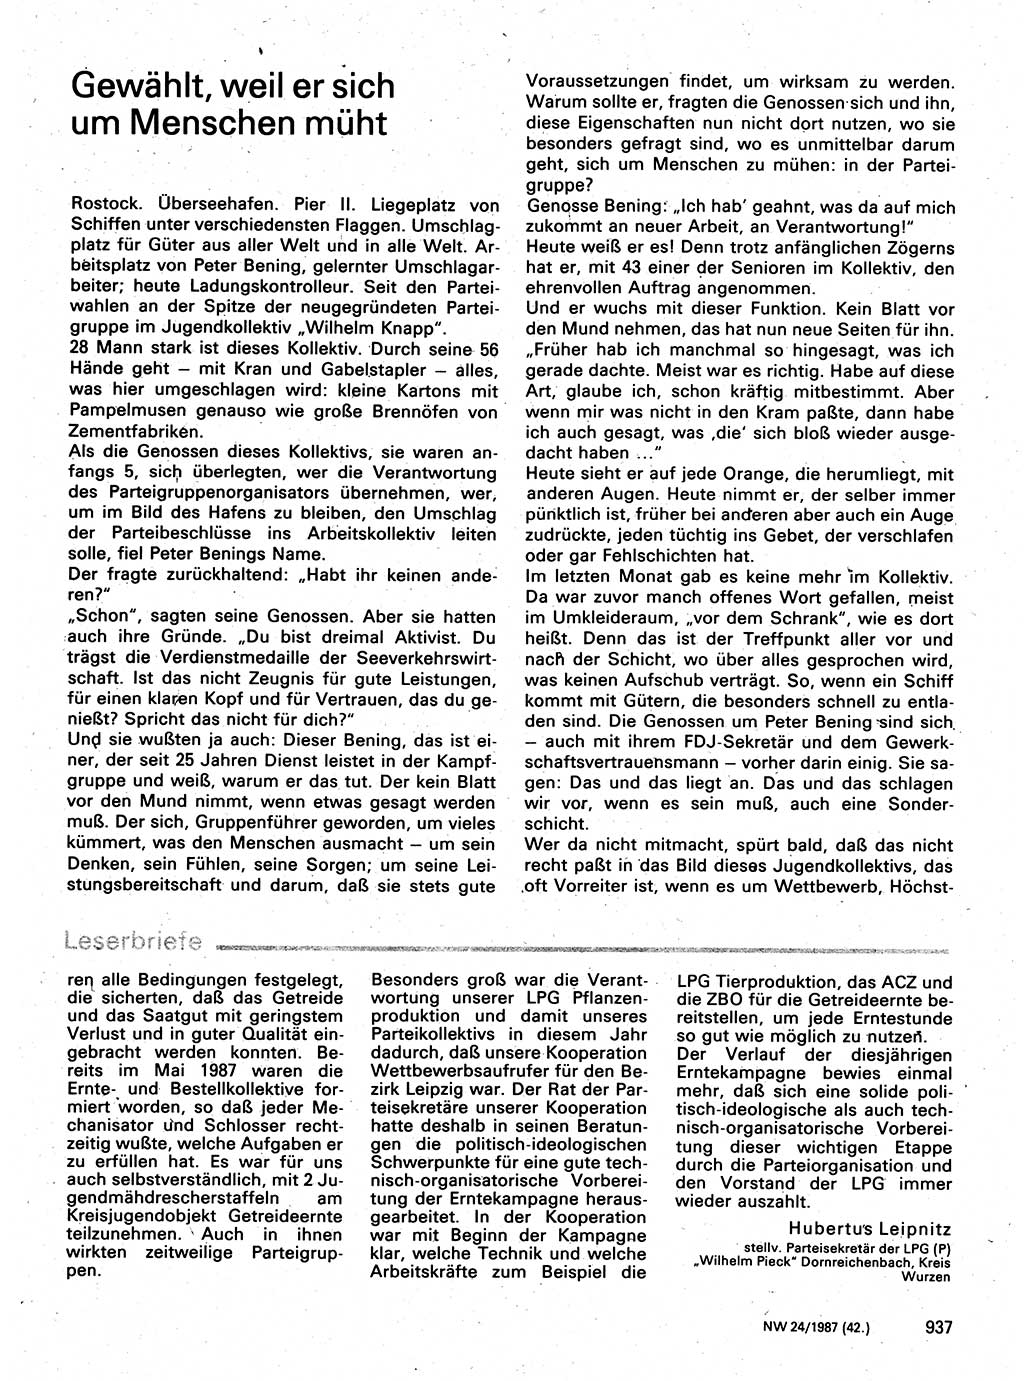 Neuer Weg (NW), Organ des Zentralkomitees (ZK) der SED (Sozialistische Einheitspartei Deutschlands) für Fragen des Parteilebens, 42. Jahrgang [Deutsche Demokratische Republik (DDR)] 1987, Seite 937 (NW ZK SED DDR 1987, S. 937)